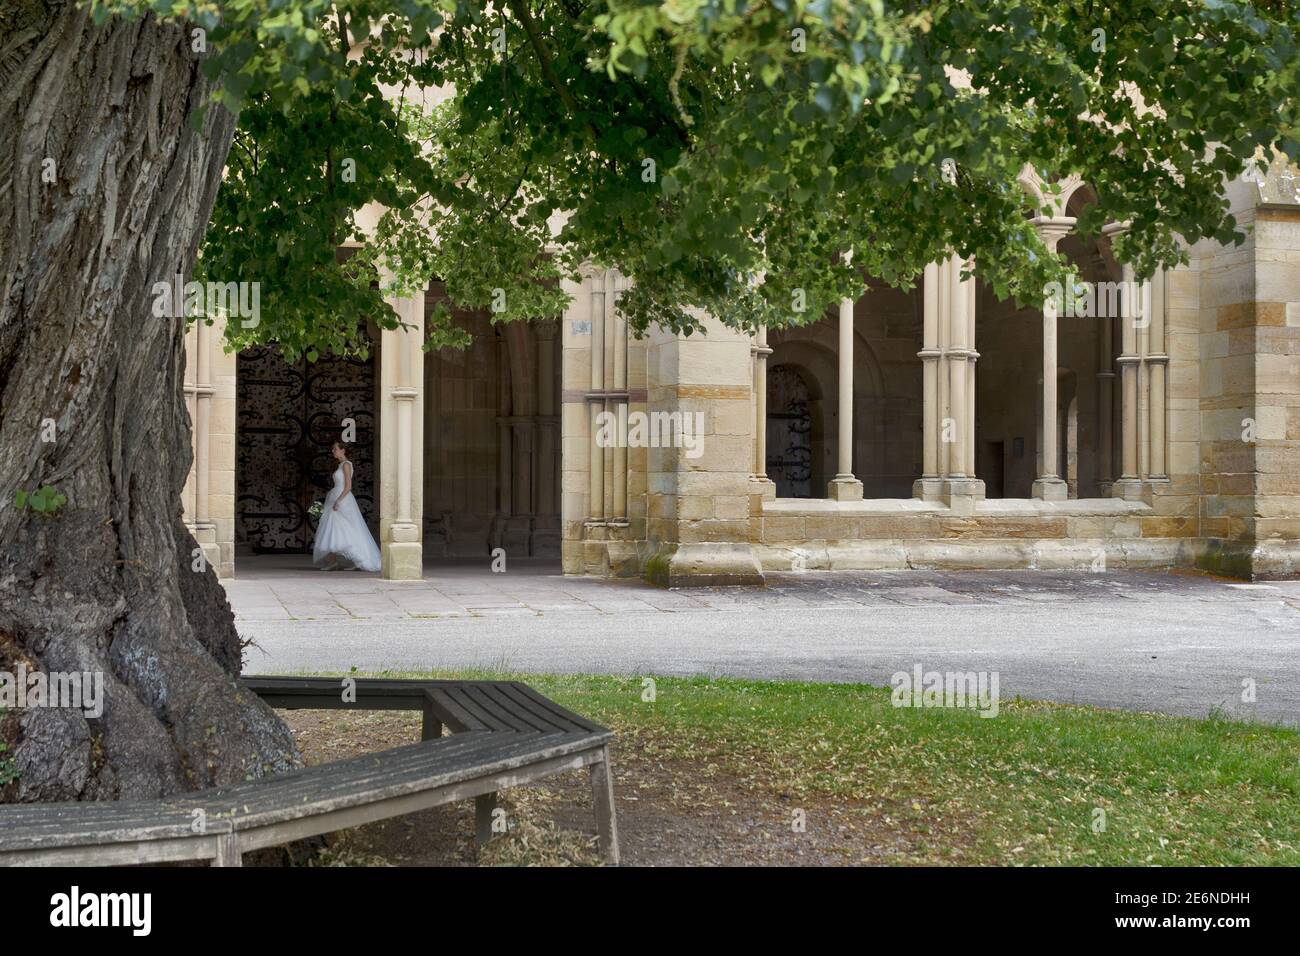 Kloster Maulbronn von außen mit einer Braut in weißem Kleid, Deutschland: Ist eine ehemalige Zisterzienserabtei in Maulbronn, Baden-Württemberg. Stockfoto